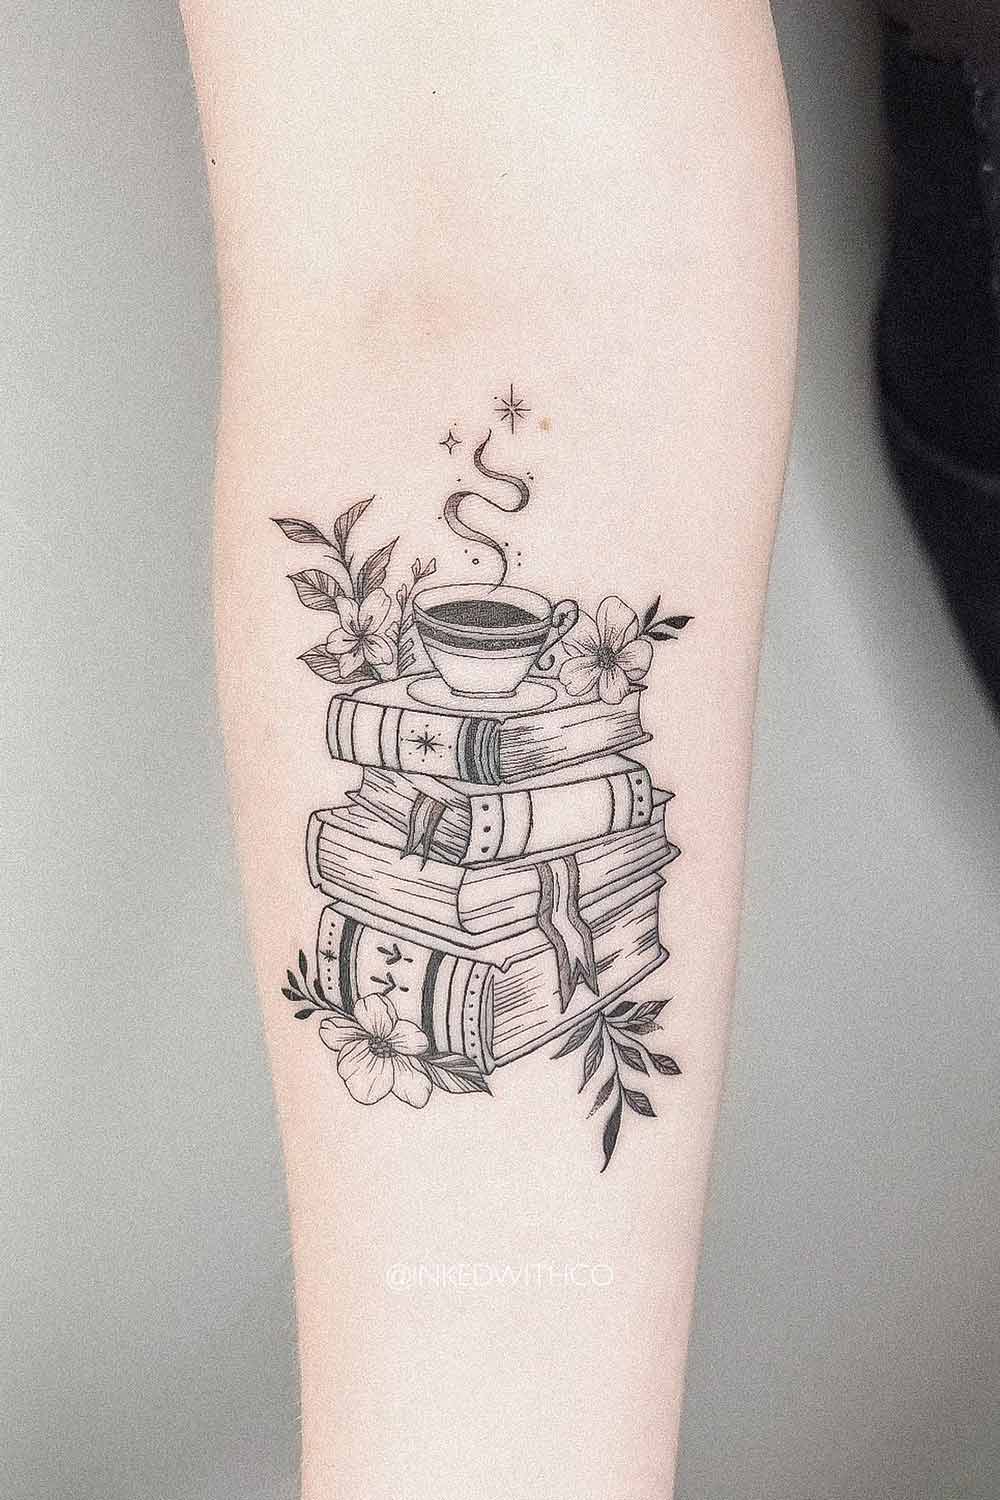 tatuagem-de-livros-e-cafe-no-antebraco 